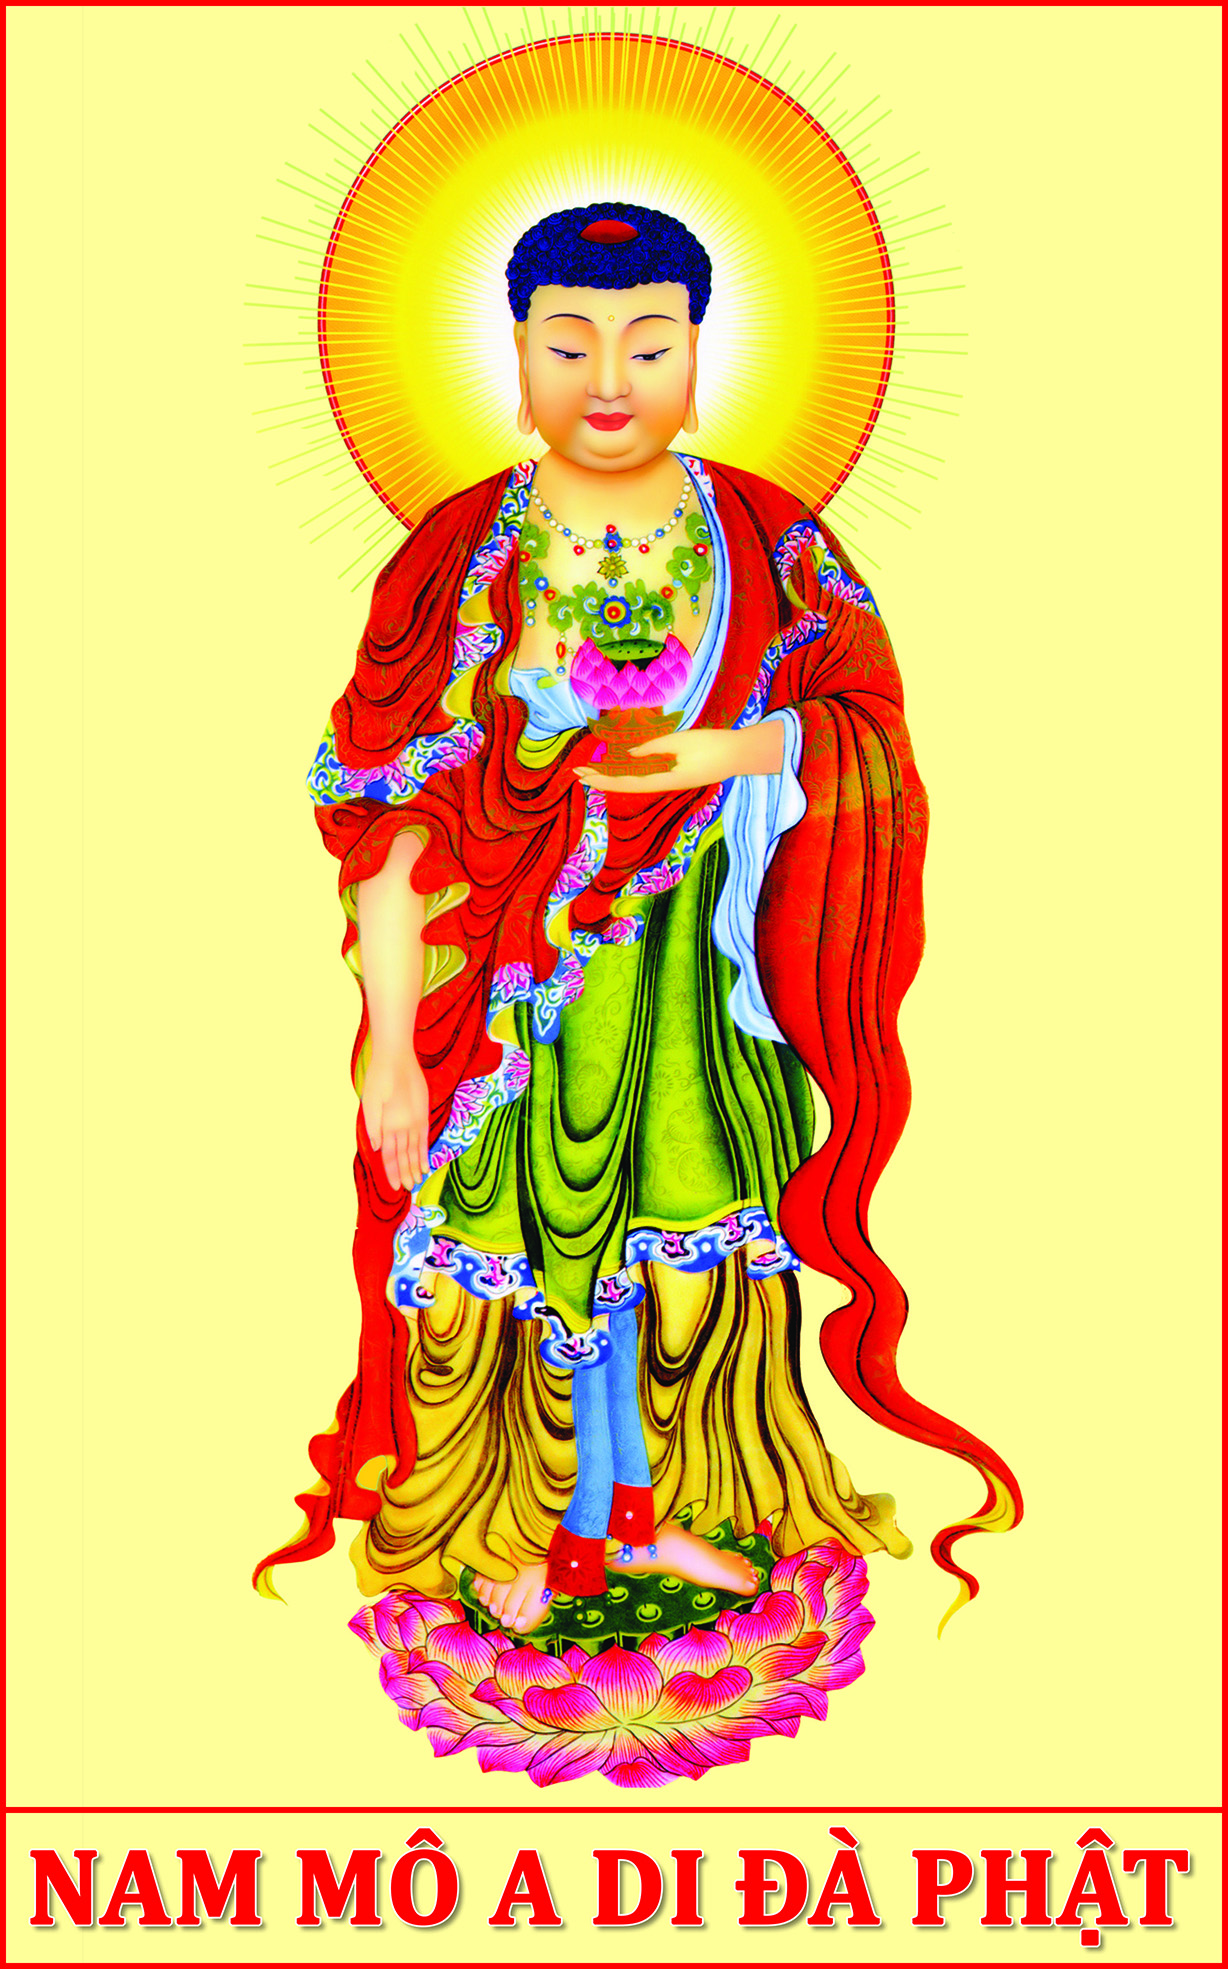 Hãy ngắm nhìn bức tranh Phật A Di Đà thiêng liêng, bao phủ bởi ánh sáng tinh khiết và tỏa sáng như tiếng kinh cầu nghi thứ thiệt. Điểm tâm tình với trang trí trầm nghiêm, động viên tinh thần. Quảng trường tràn ngập hoa sen của chân trời địa phủ.